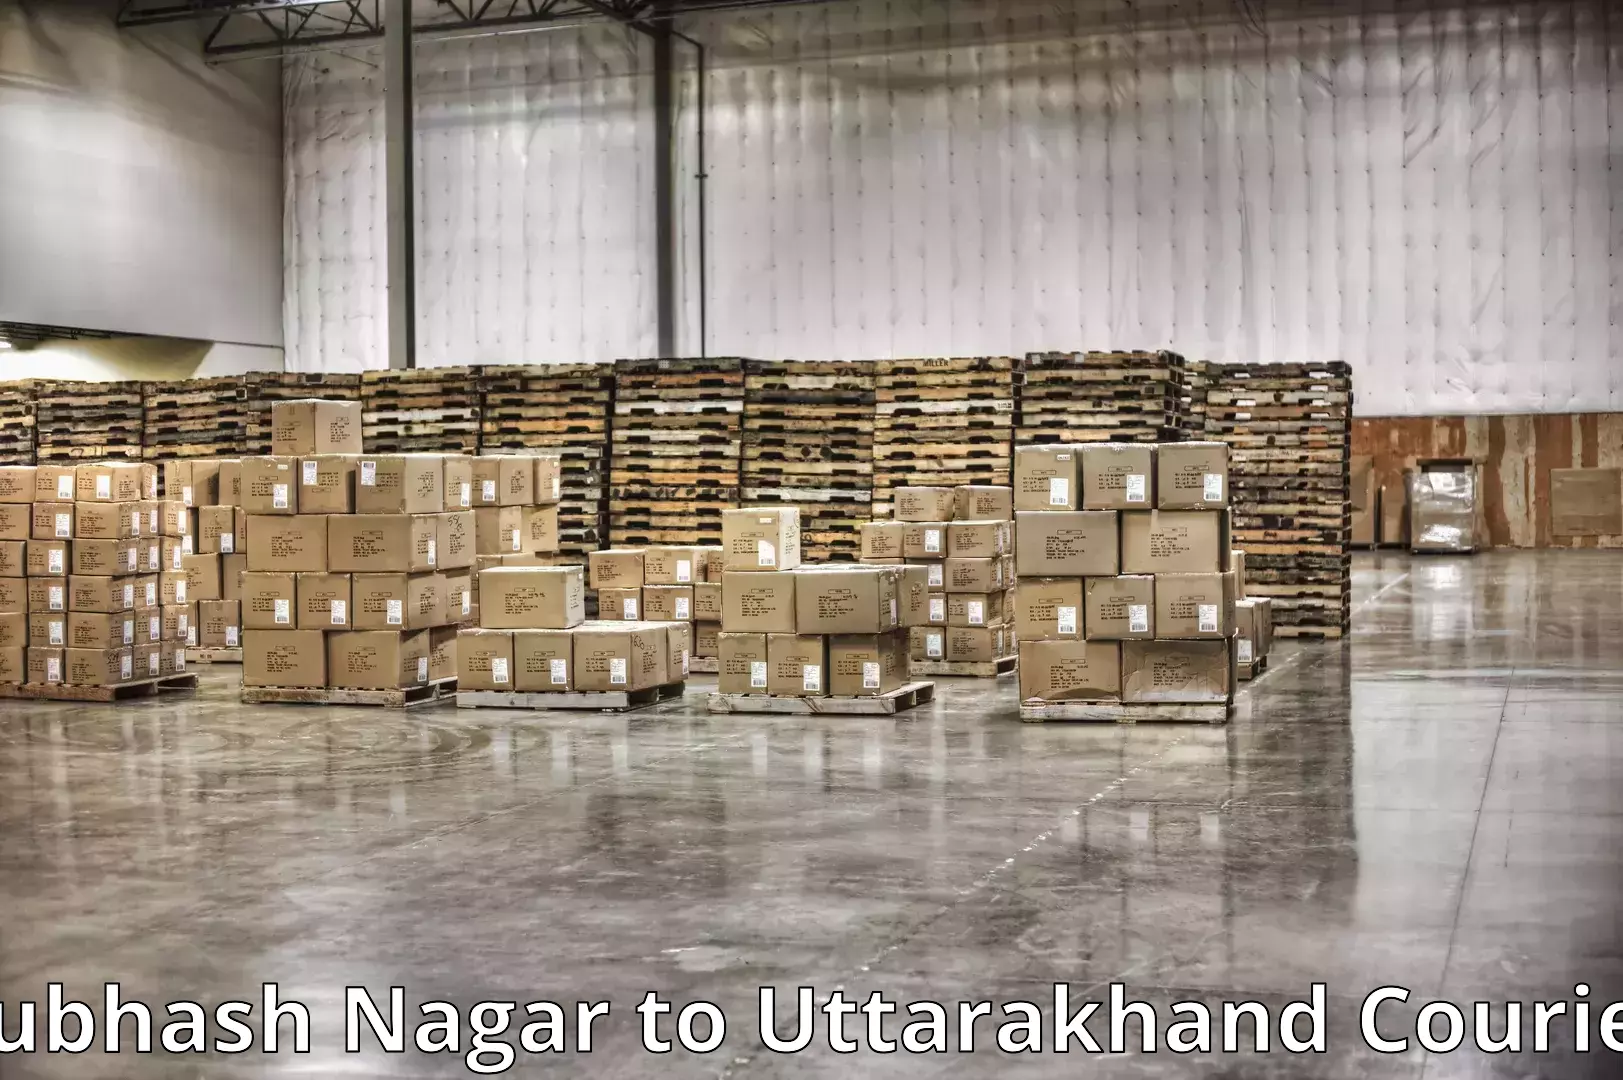 Furniture relocation experts Subhash Nagar to Sitarganj